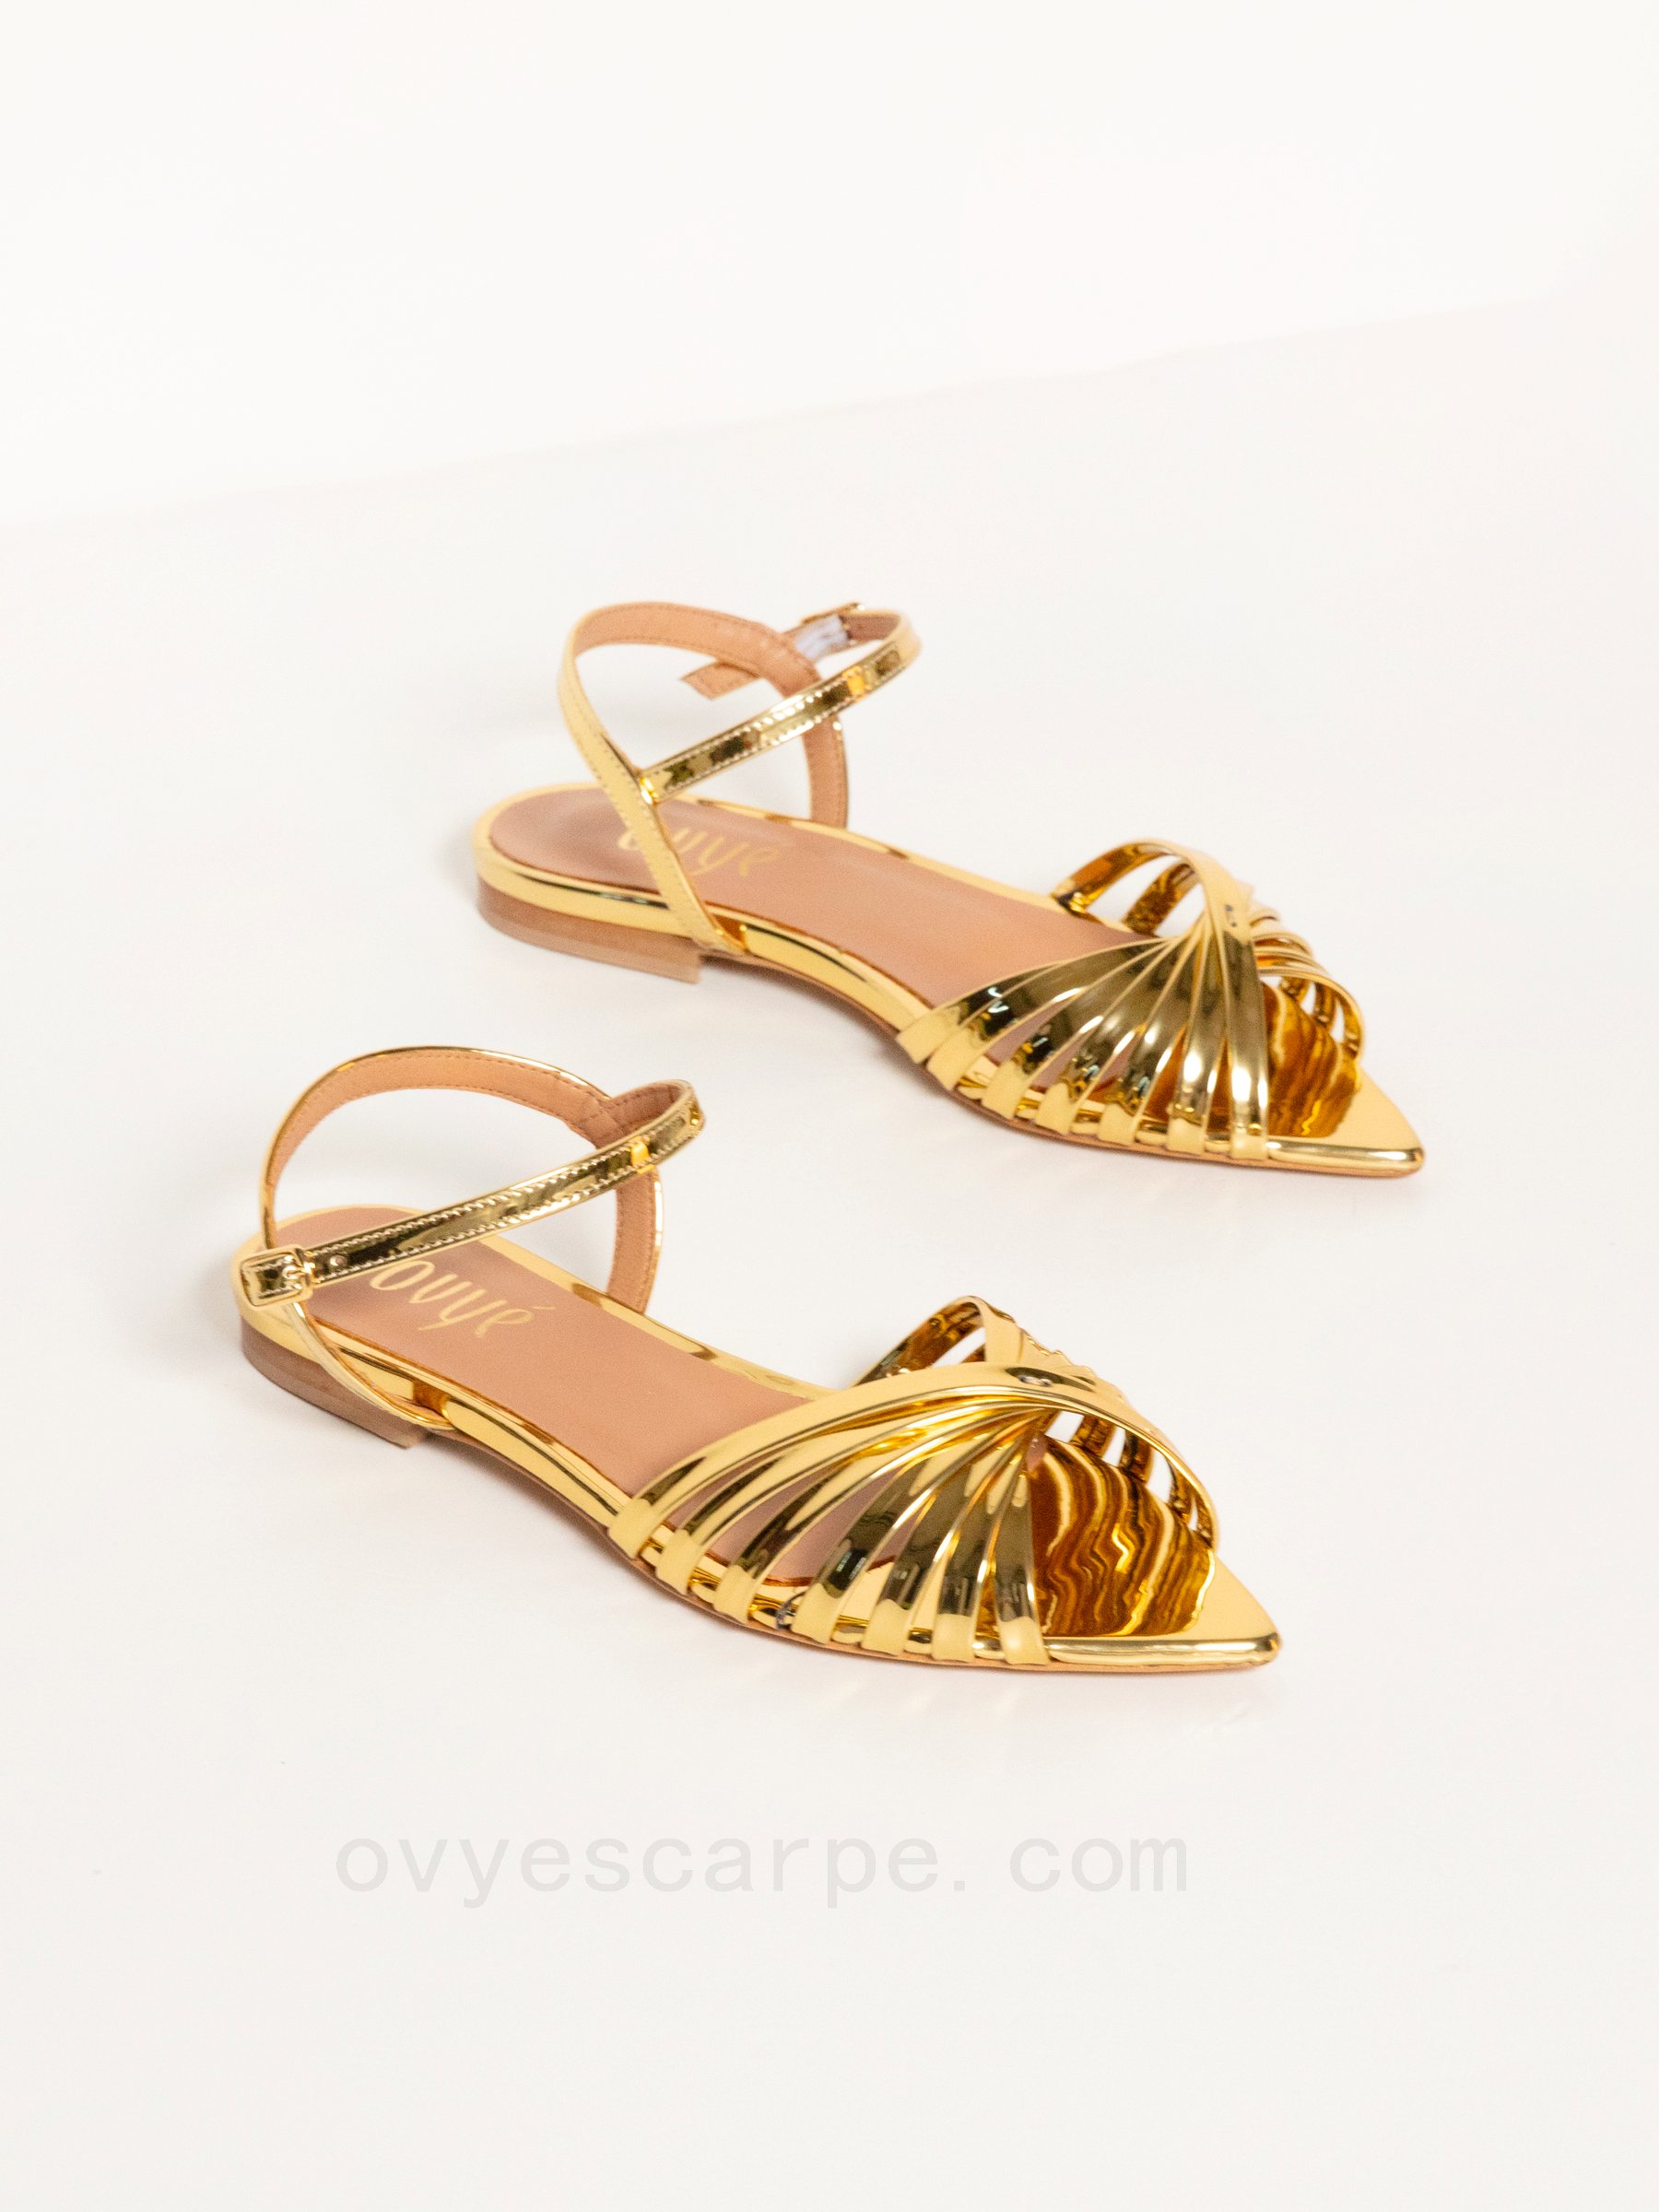 (image for) Outlet Online Mirror Sandal Gold Color F08161027-0588 ovye online